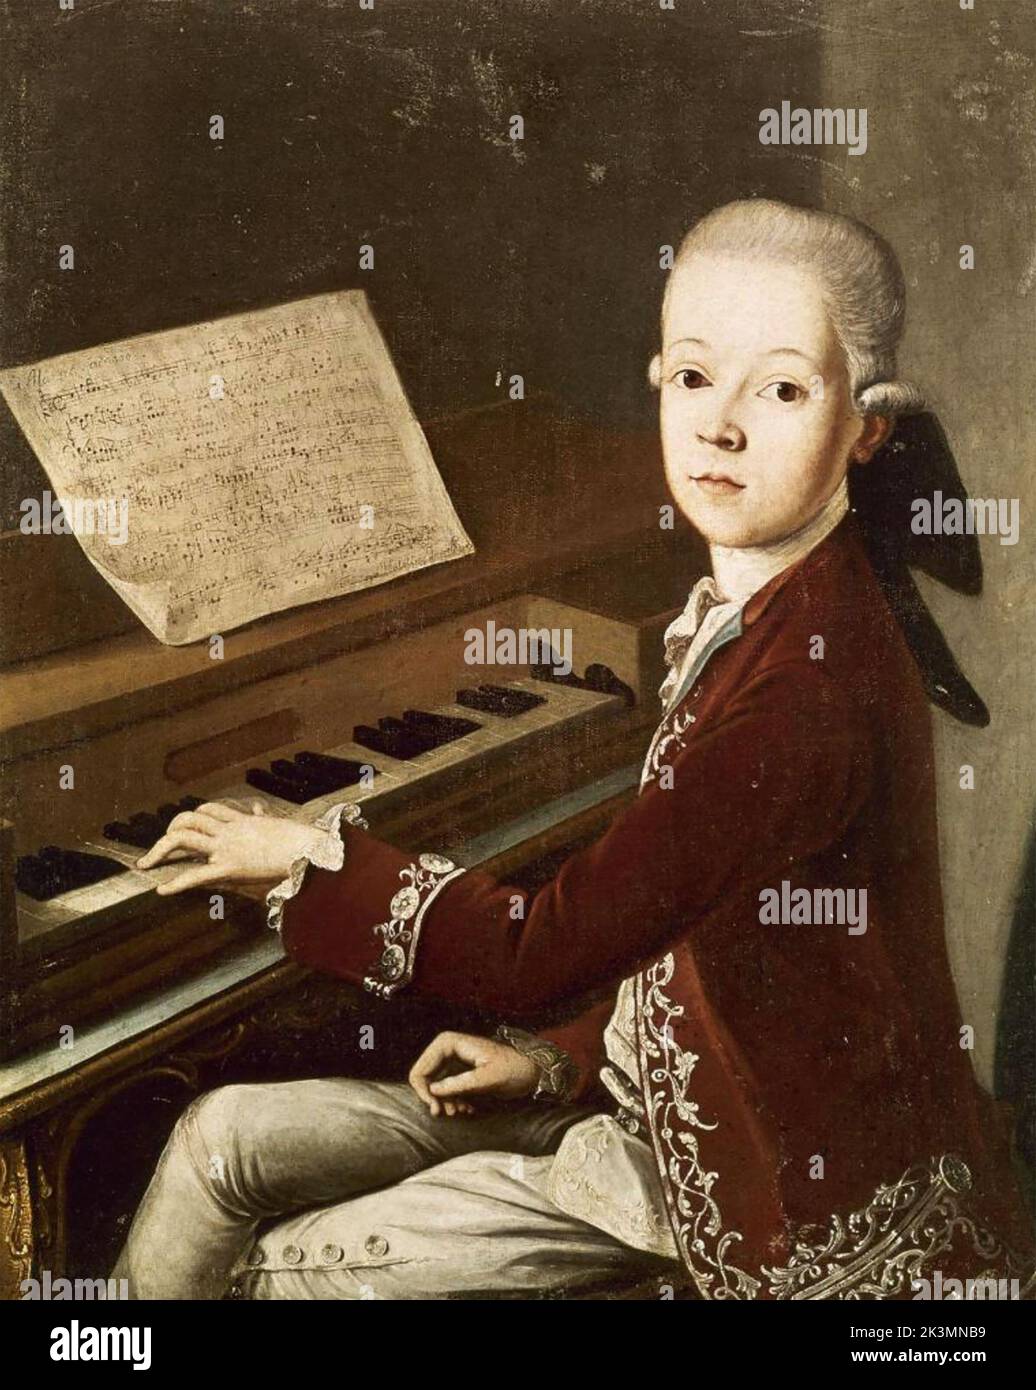 WOLFGANG AMADEUS MOZART (1756-1791) compositor austríaco tocando el pinet en 1768 Foto de stock